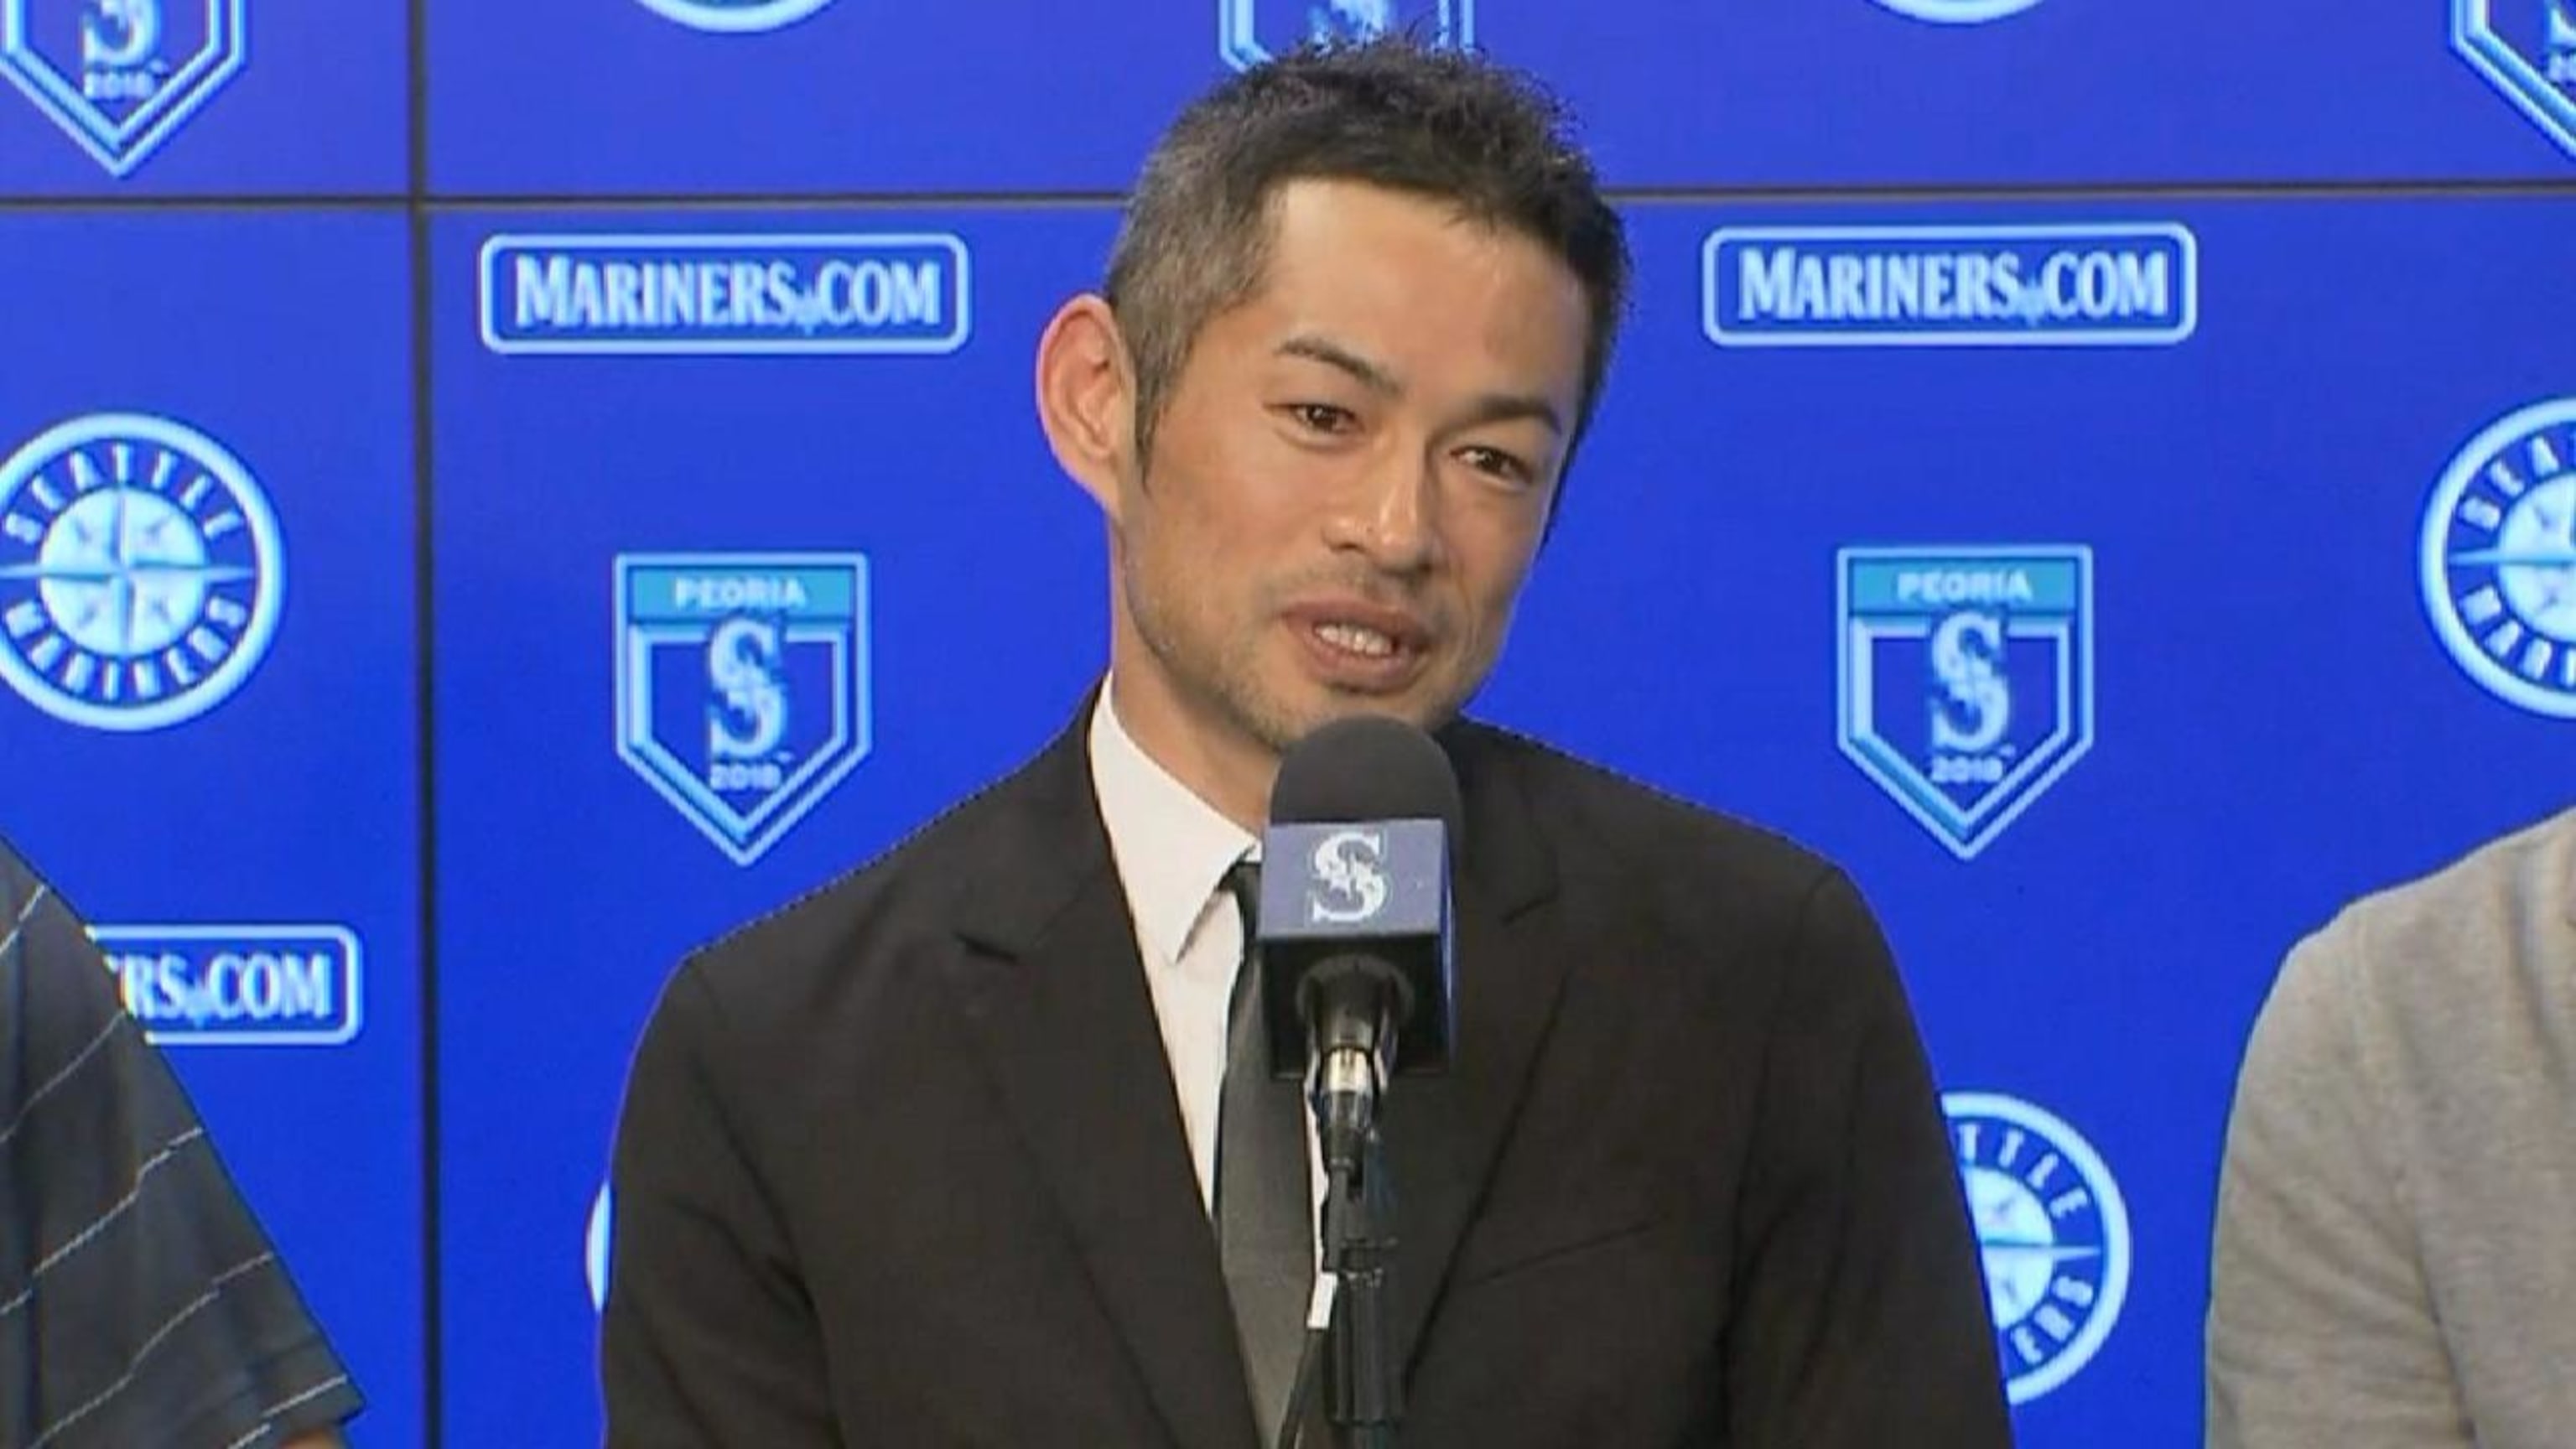 Baseball: Mariners sign Ichiro, invite him to spring training camp